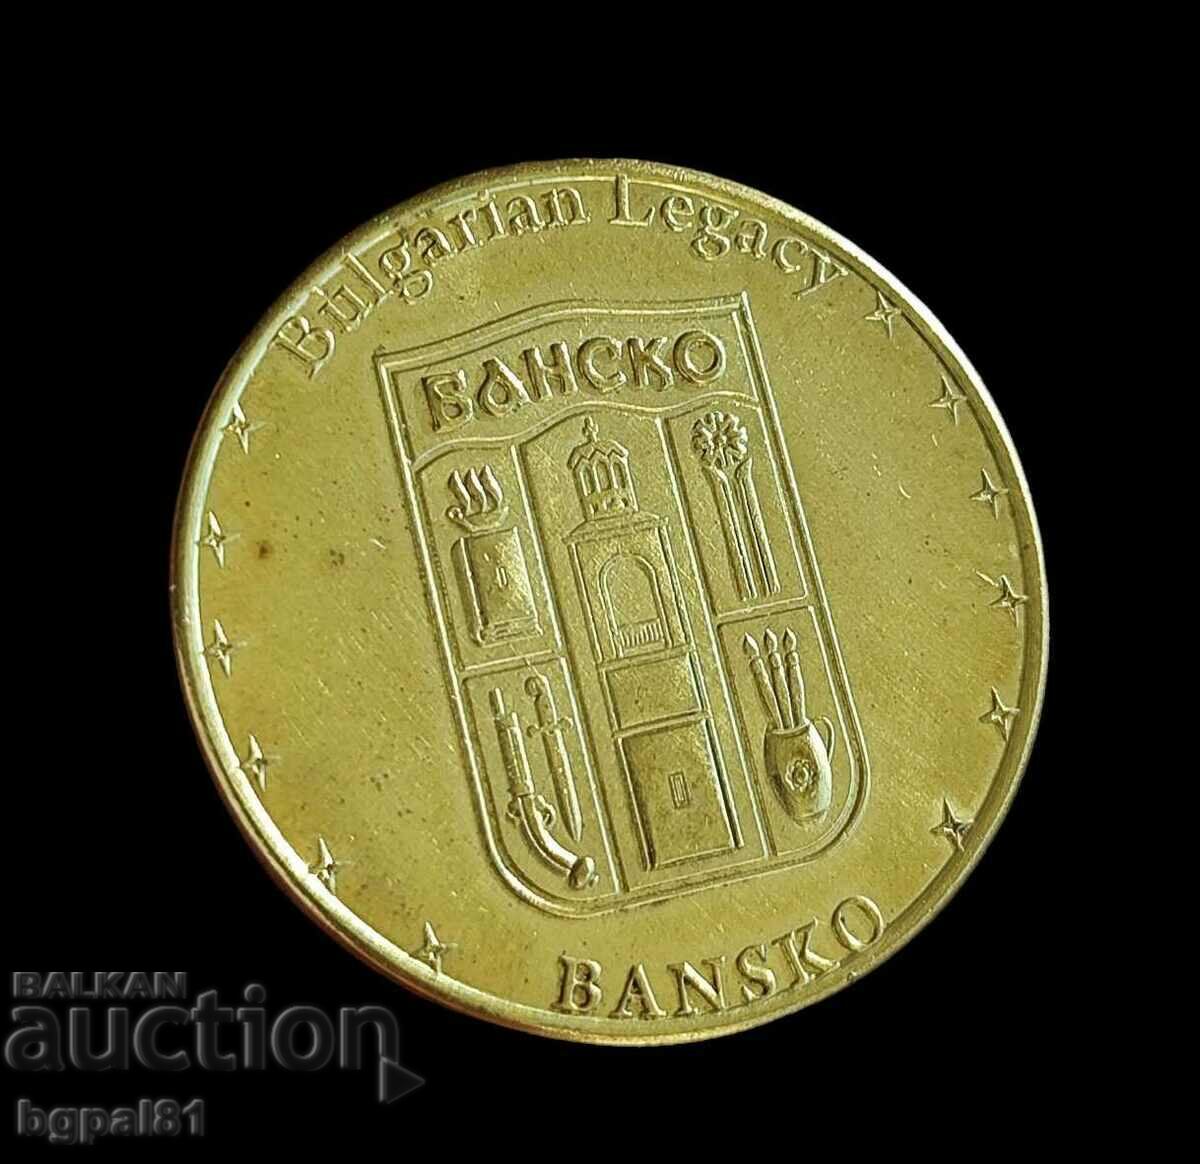 Μπάνσκο - Έκδοση μεταλλίου "Βουλγαρική κληρονομιά".